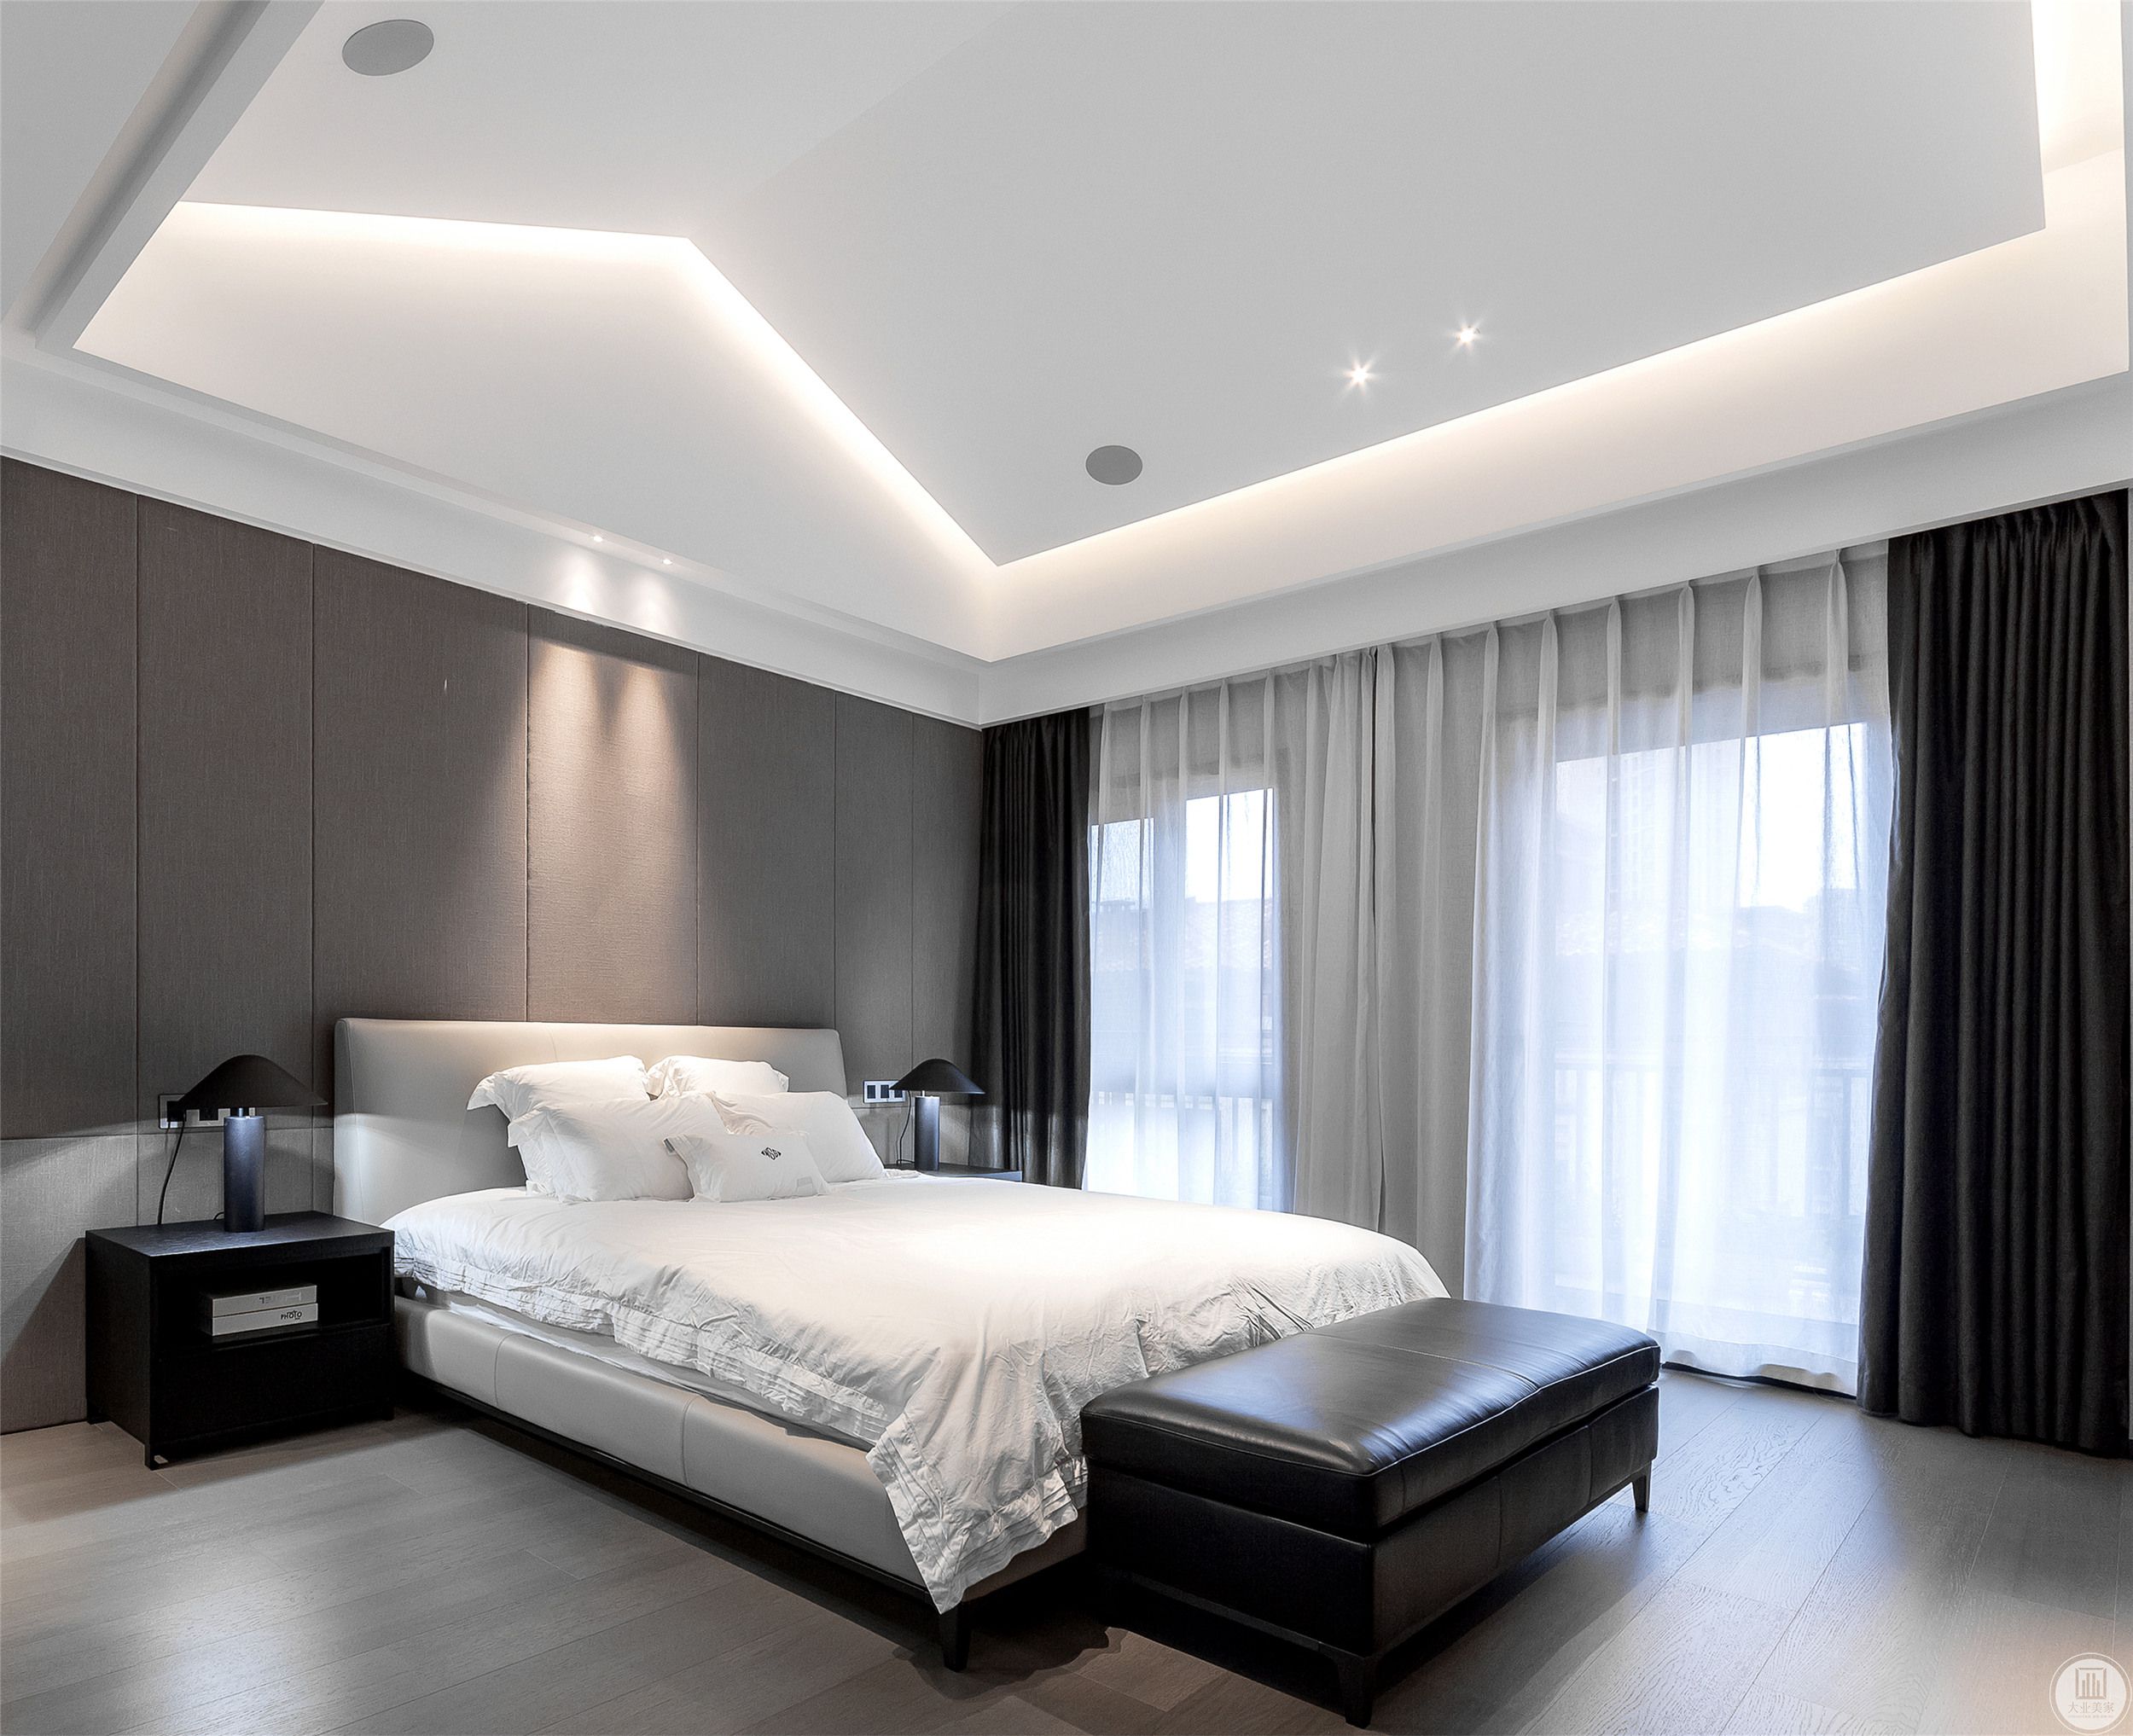 设计师采用无吊顶、四周挂边的设计保留卧室的层高，加上深灰色的质感床头背景墙搭配白色色窗帘，让空间产生了丰富的层次感。